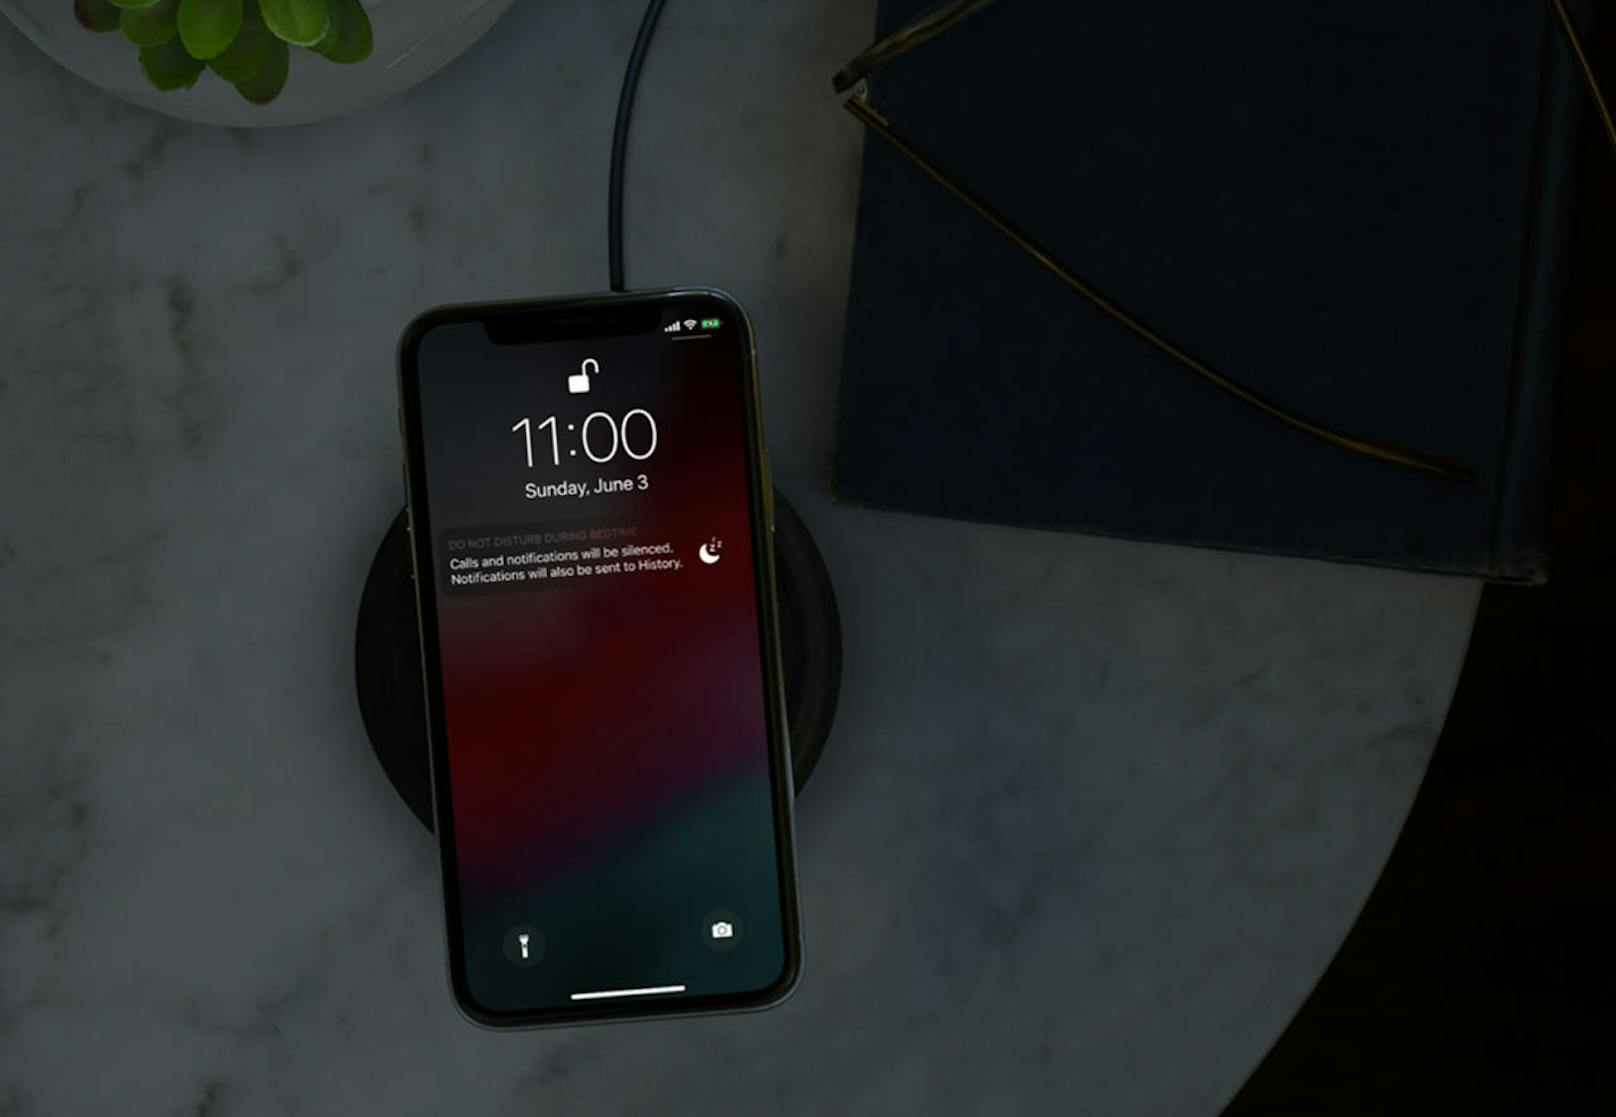 Noch ein Feature gegen die "Smartphone-Sucht": Damit man vor dem Schlafengehen nicht von einer Flut an Benachrichtigungen abgelenkt wird, bringt Apple einen reduzierten "Nighttime-Mode" als Erweiterung des "Do not disturb"-Features.